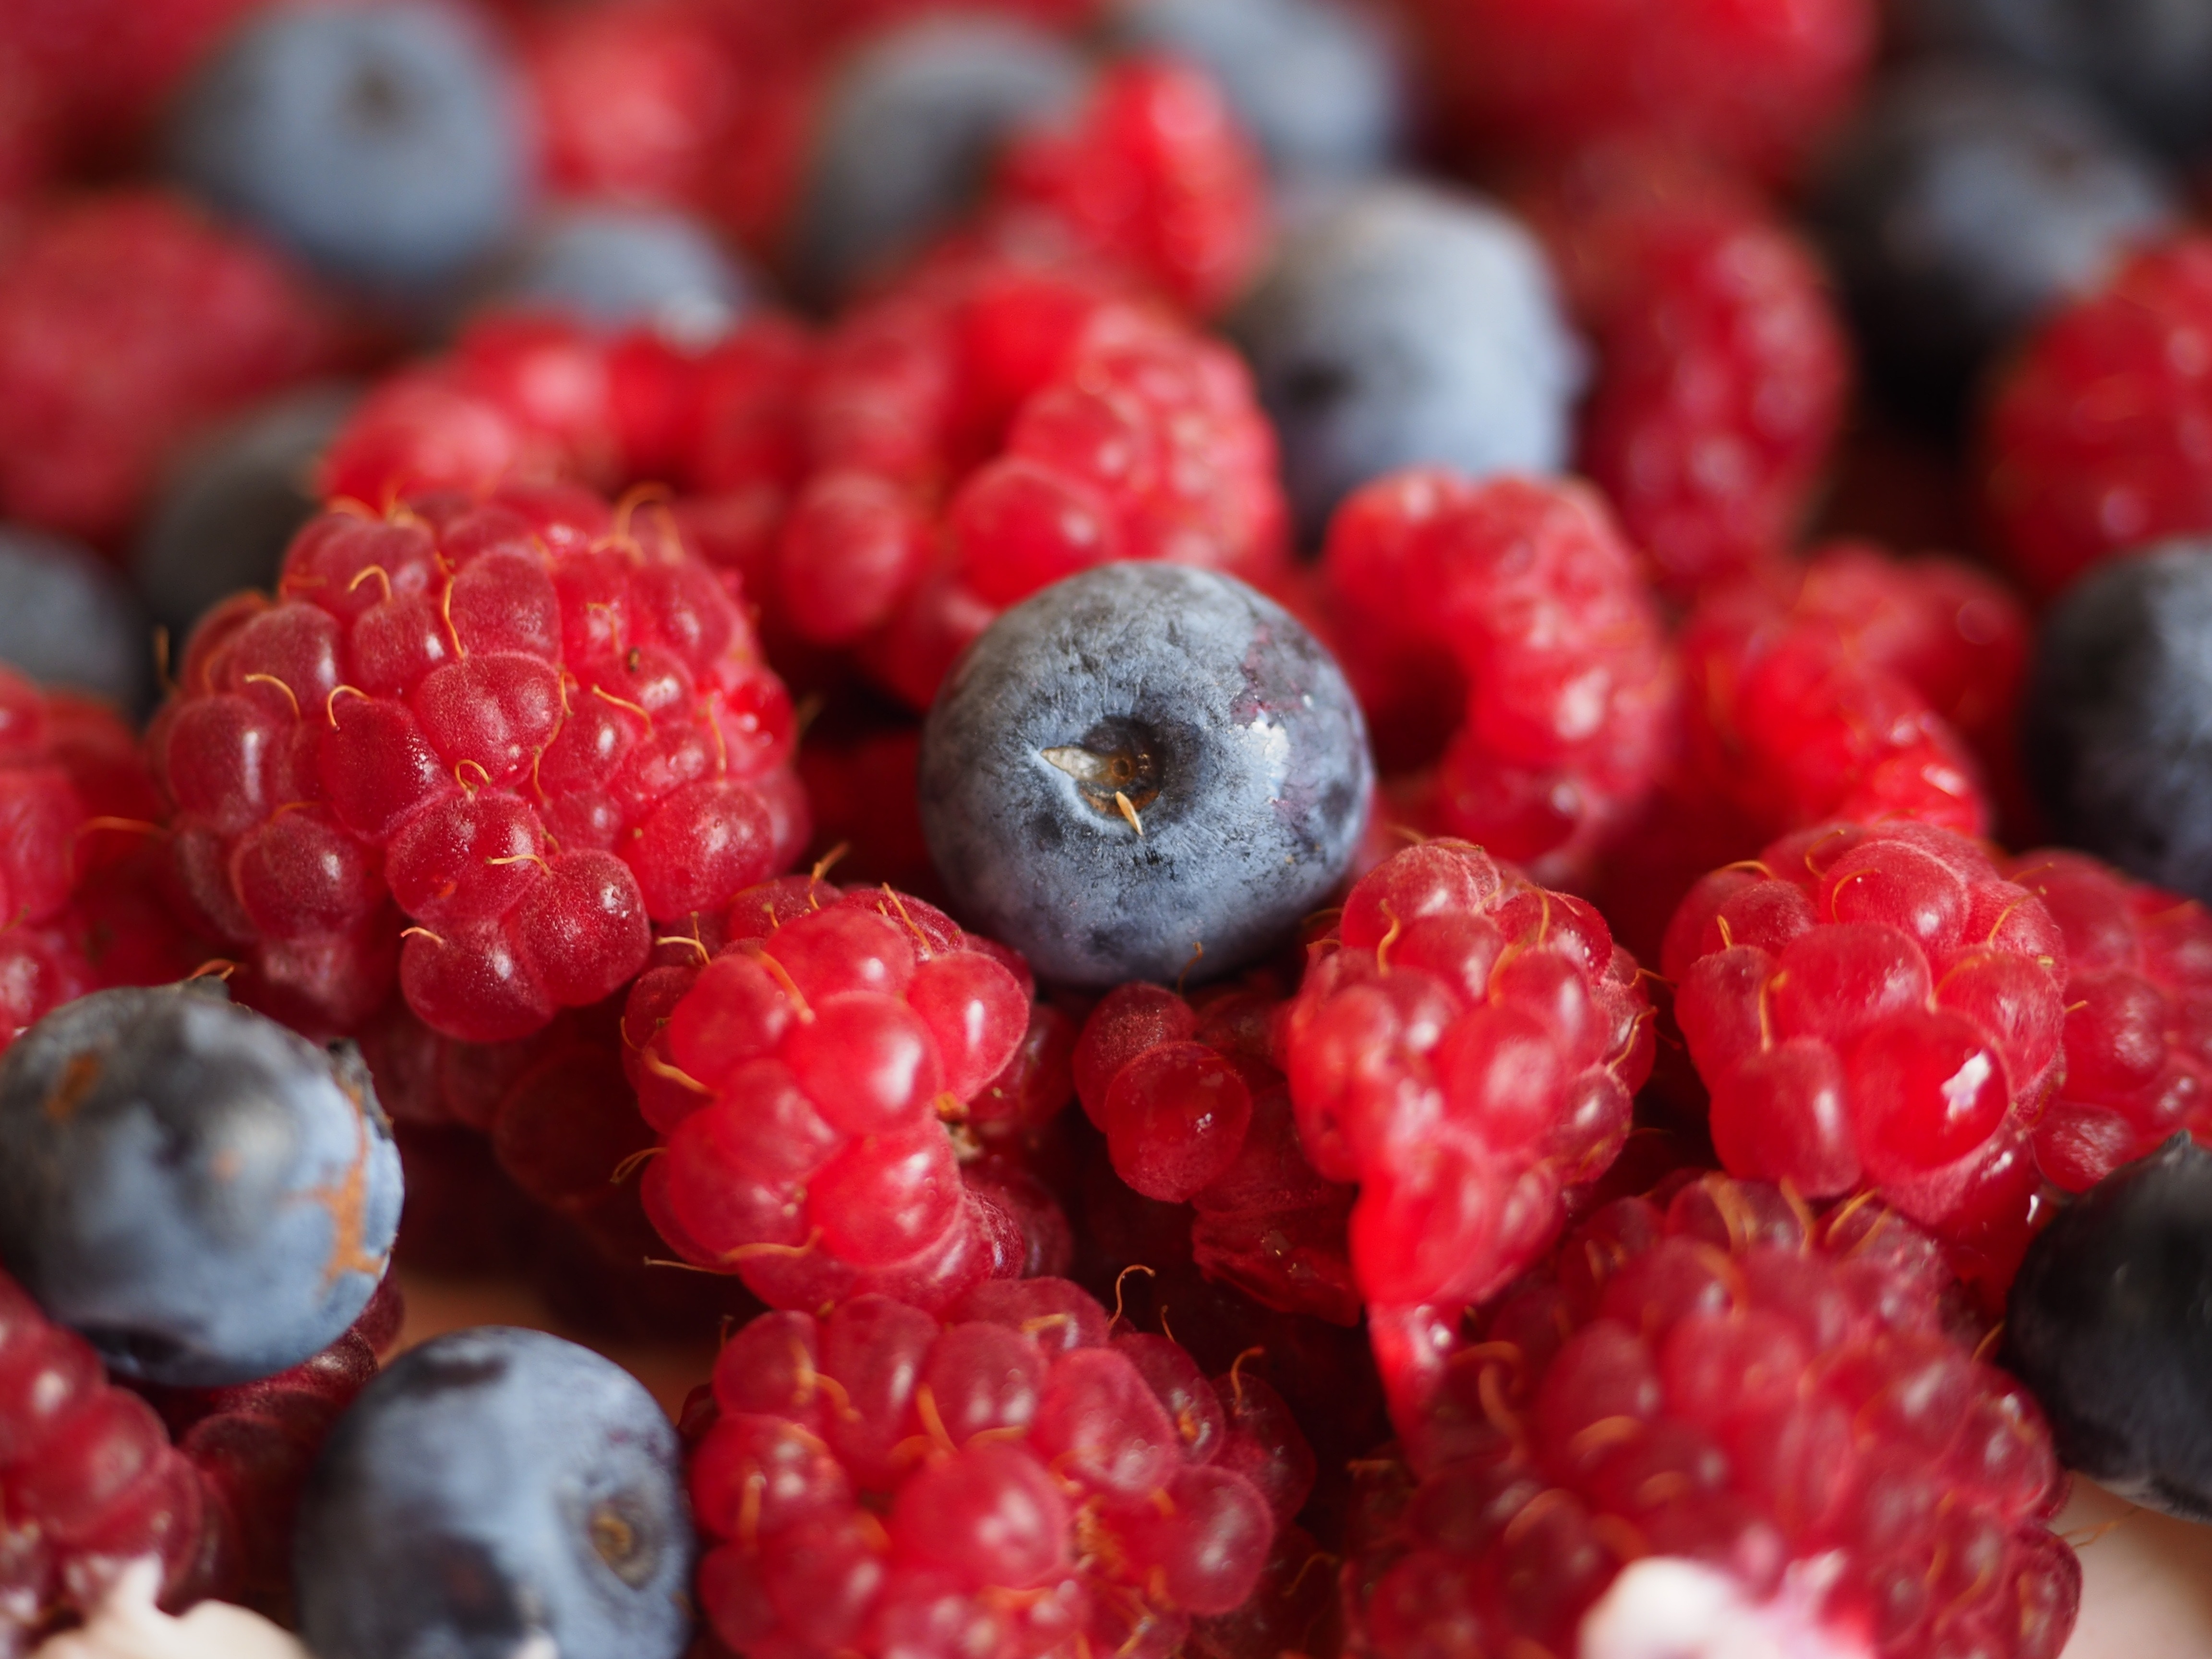 raspberries and blue berries